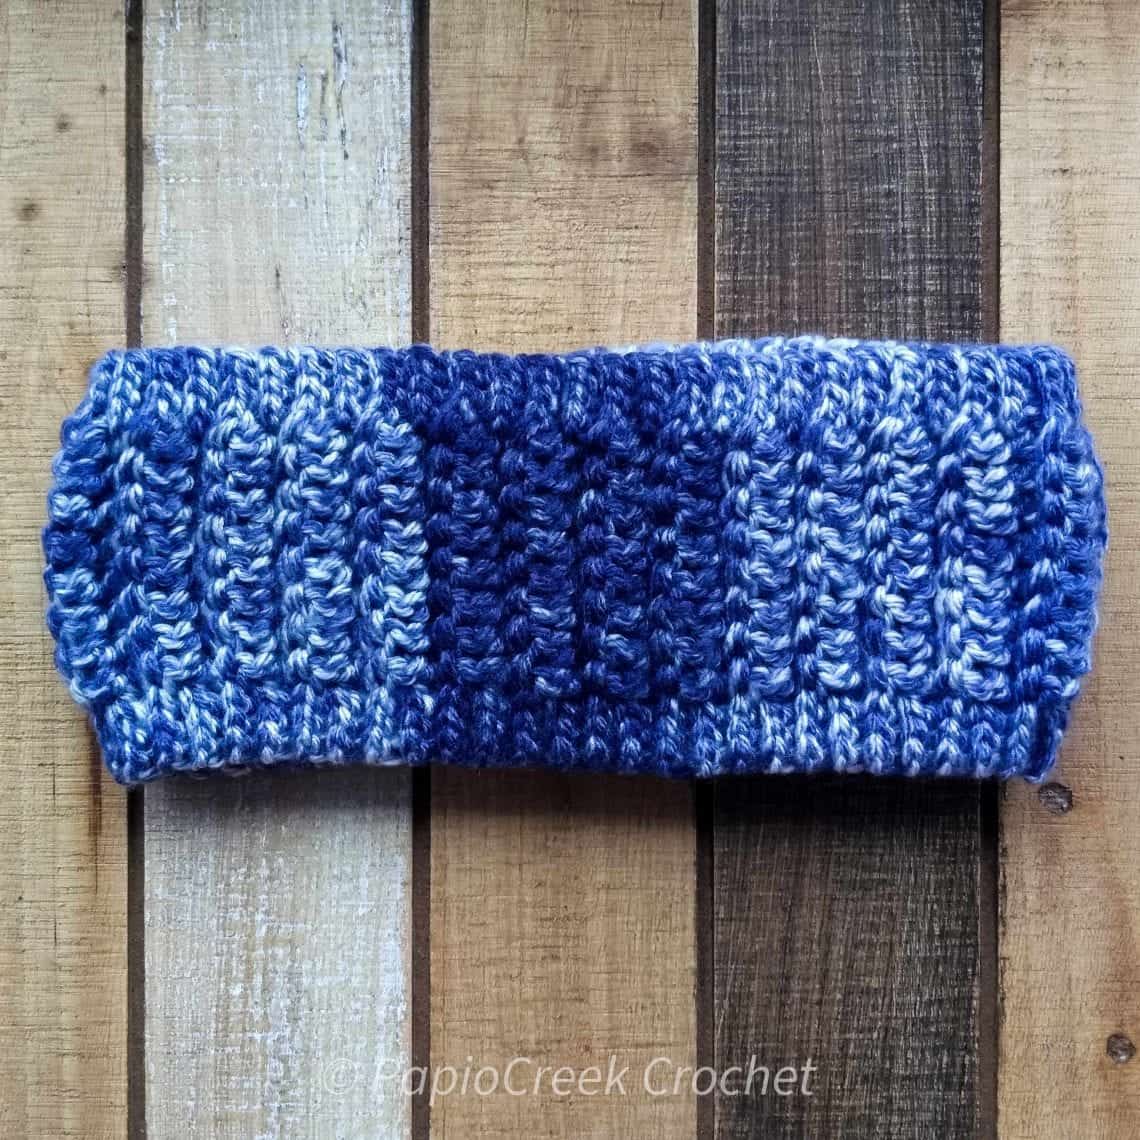 Hickory Hill Ear Warmer Crochet Pattern Quick PapioCreek Crochet